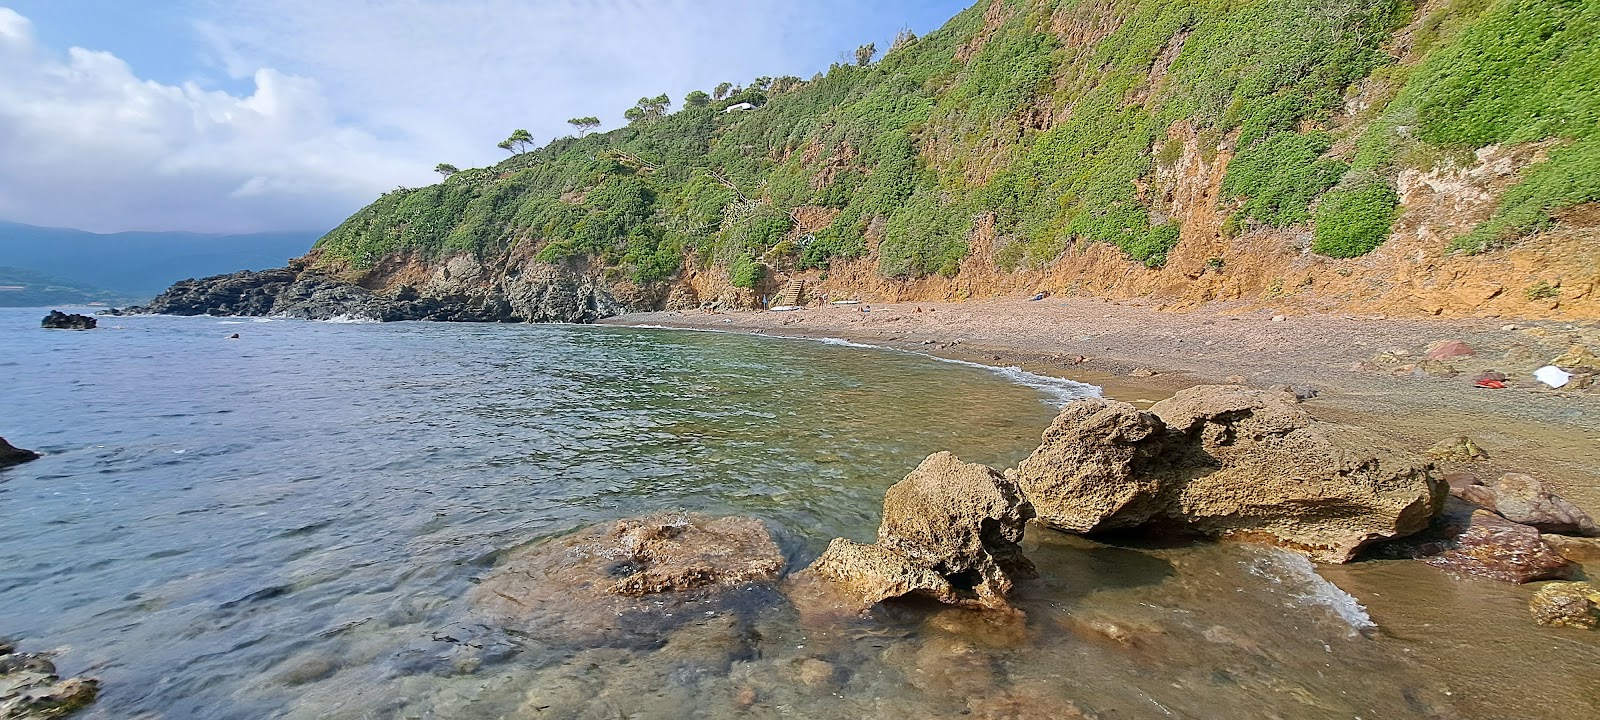 Spiaggia Canata'in fotoğrafı doğal alan içinde bulunmaktadır